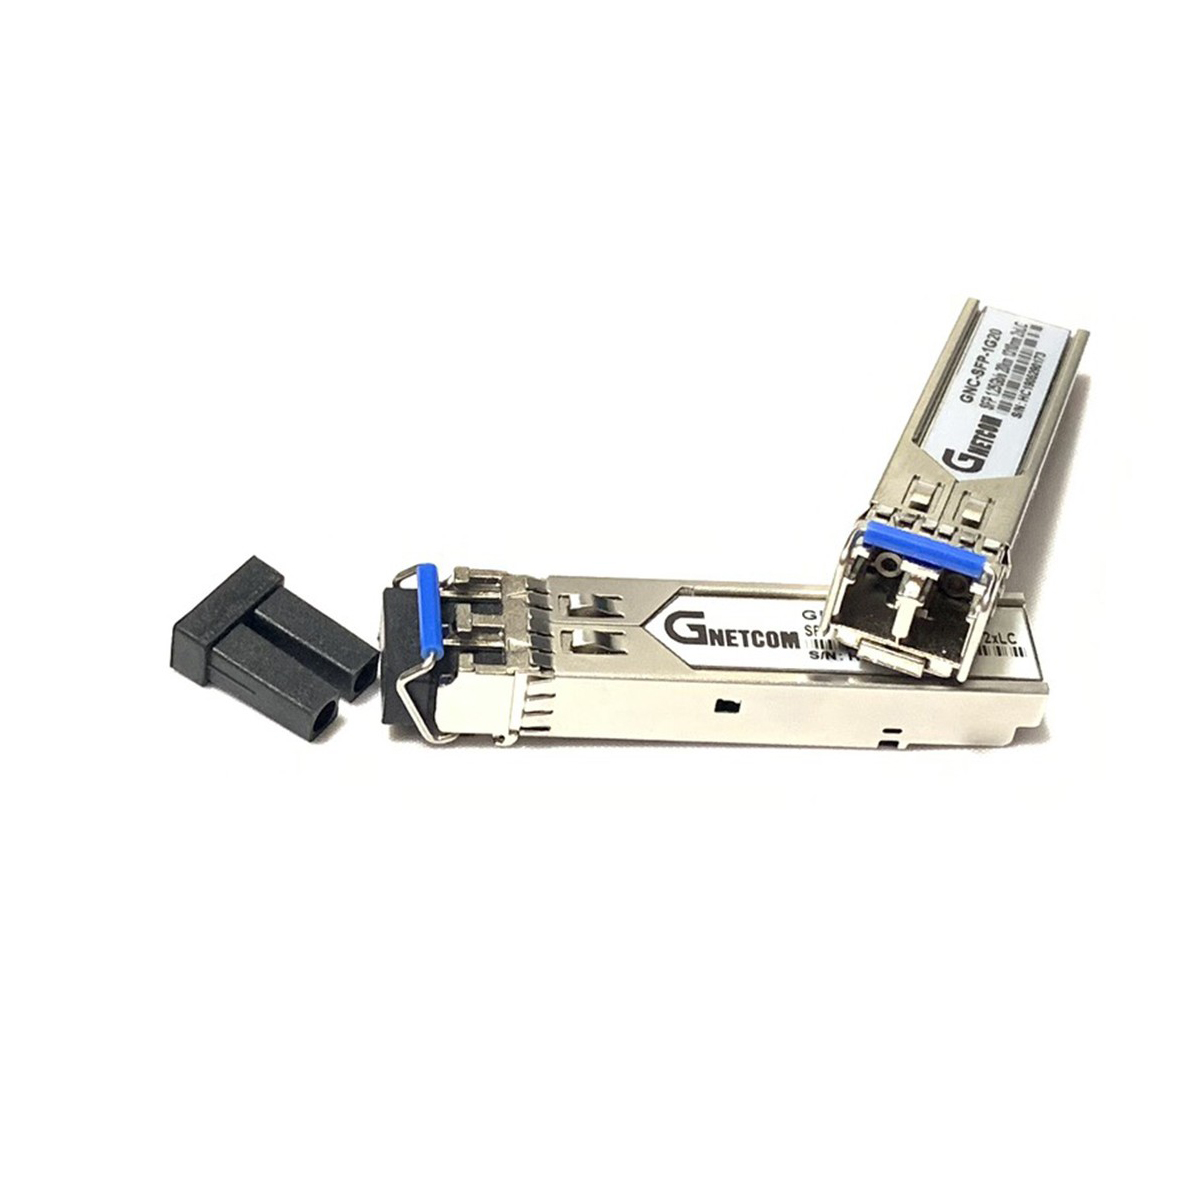 Module quang 2 sợi 1,25Gb Gnetcom GNC-SFP-1G20 (1 thiết bị ) - Hàng Nhập Khẩu